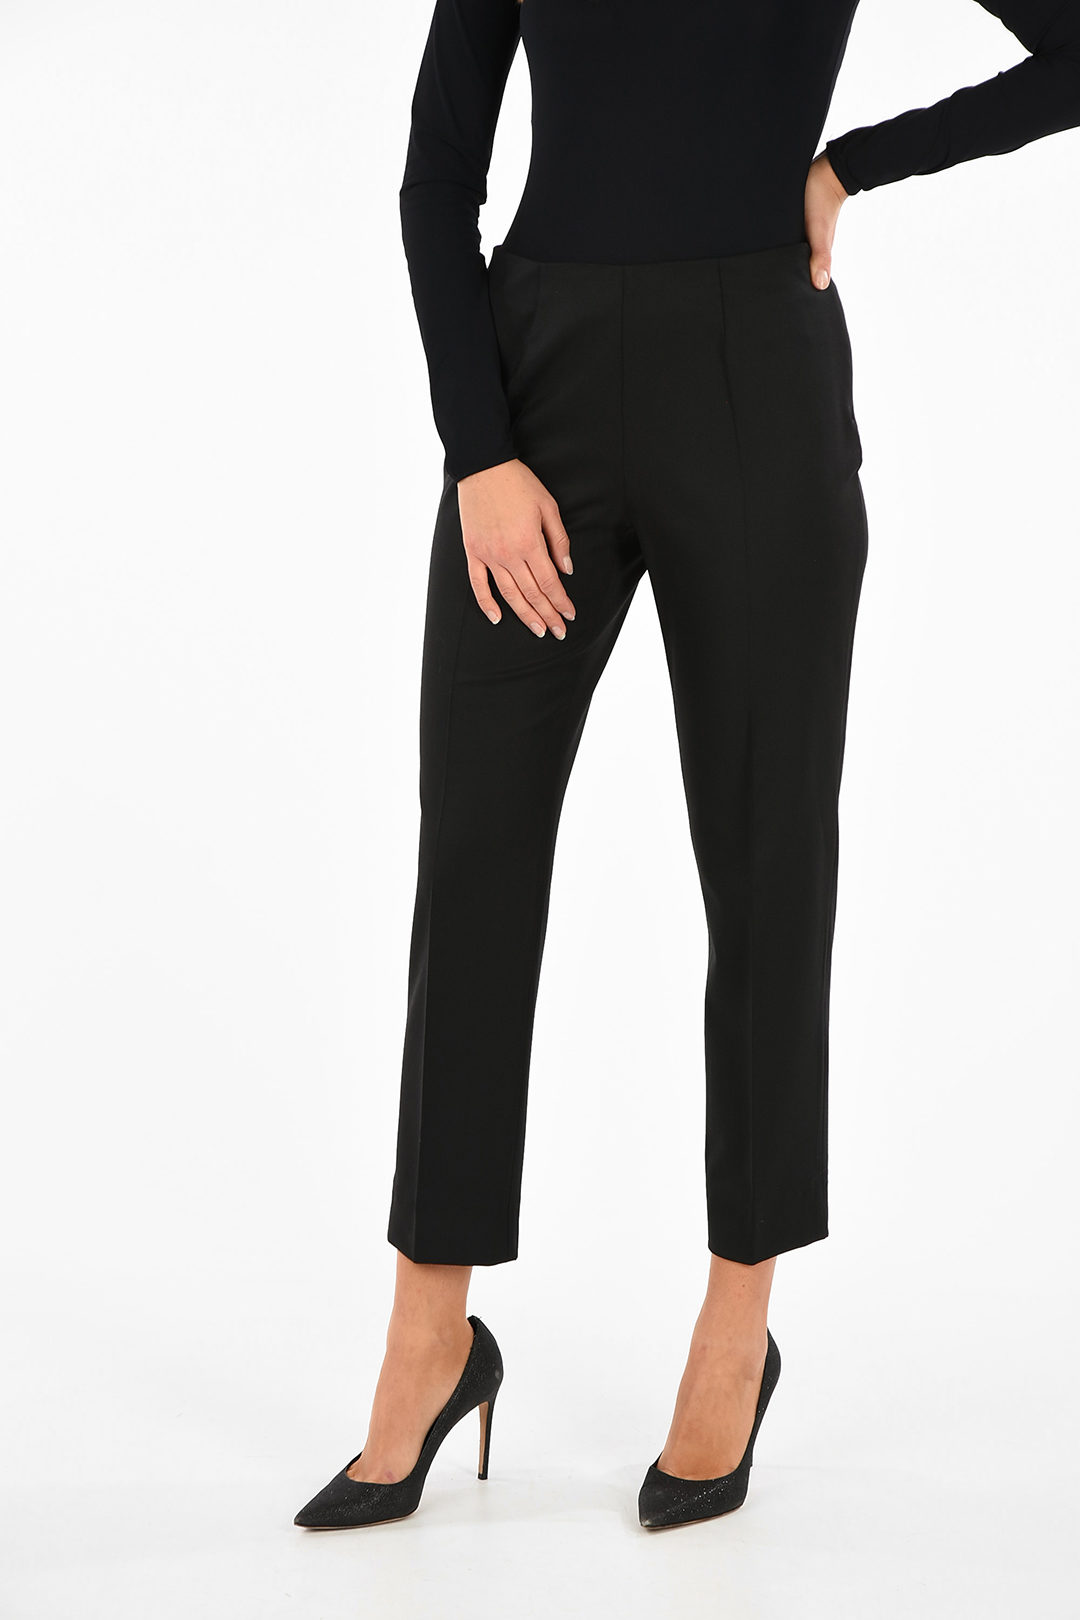 Metradamo GIAPPO+ side-zip fastening straight pants women - Glamood Outlet